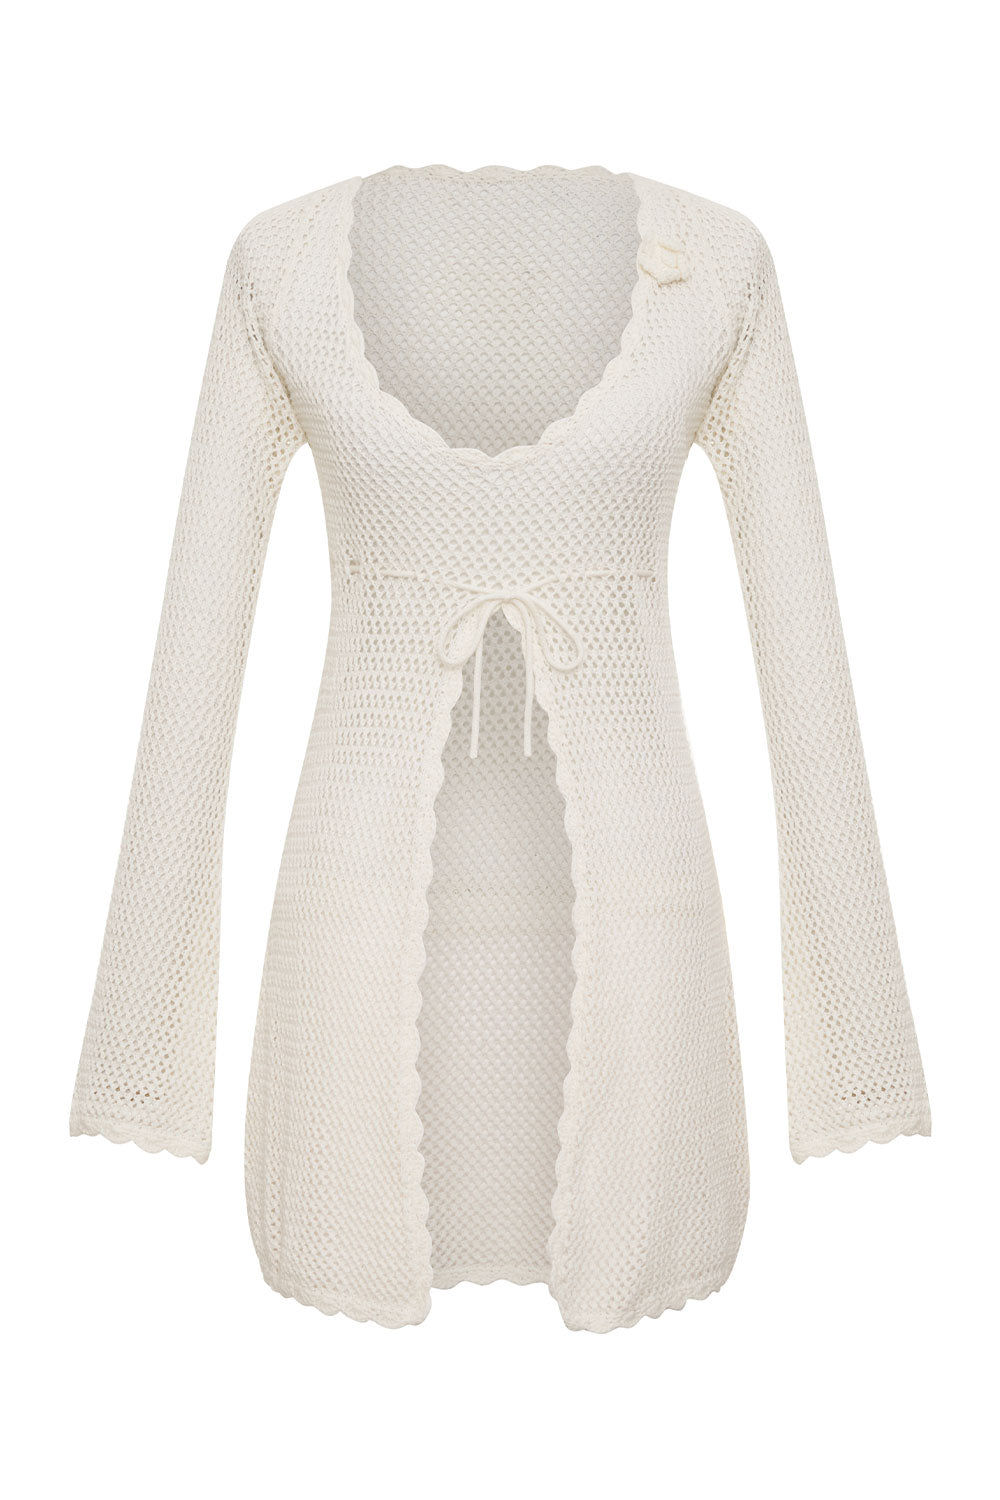 Collette Crochet Tunic - White